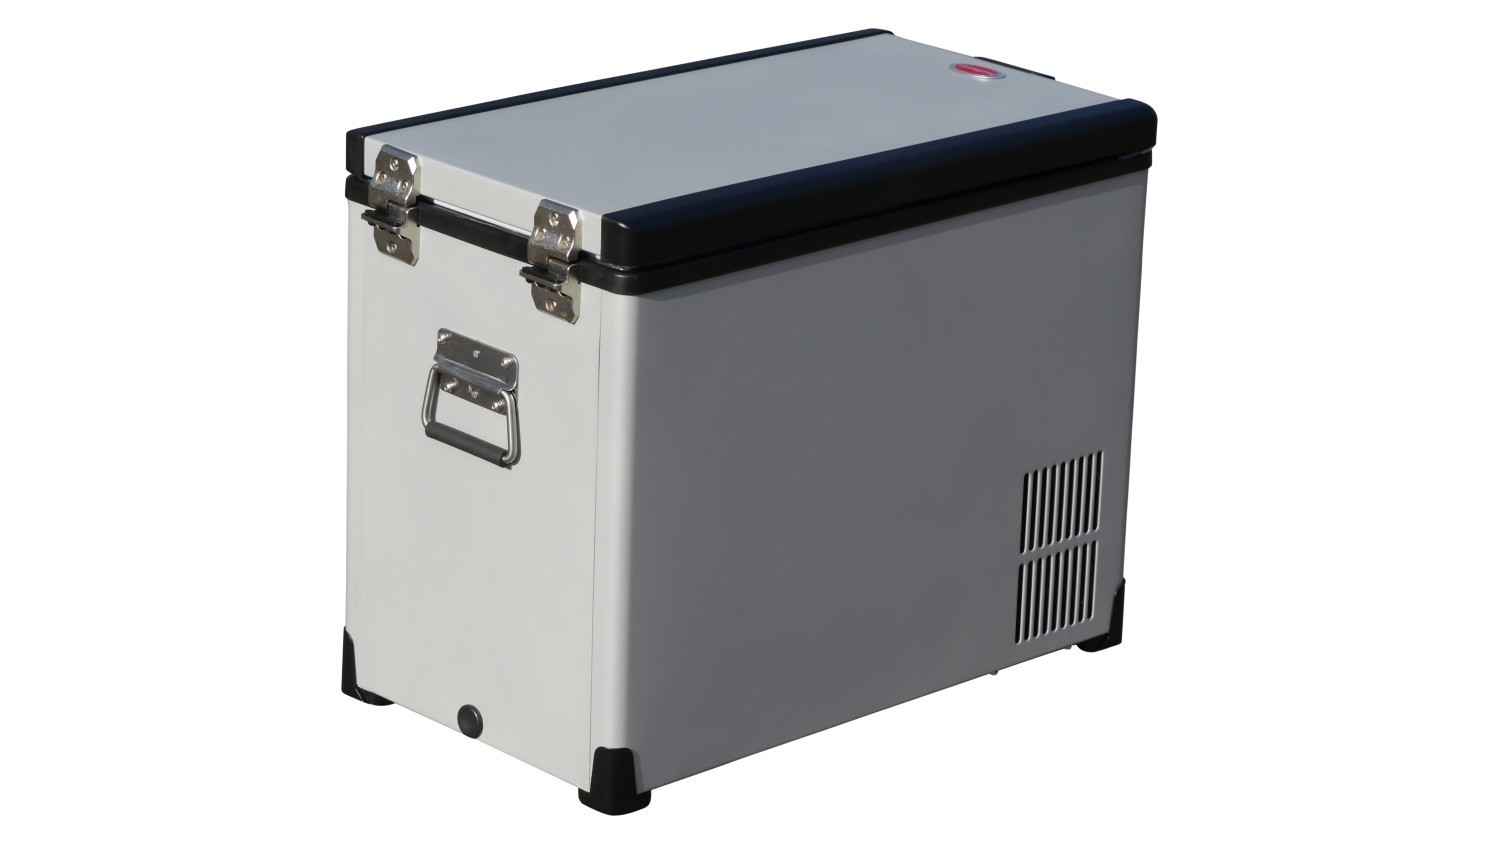 SnoMaster Kühl- und Gefrierbox Low Profile 92D mit zwei getrennten  Kühlfächern: 41L/51L